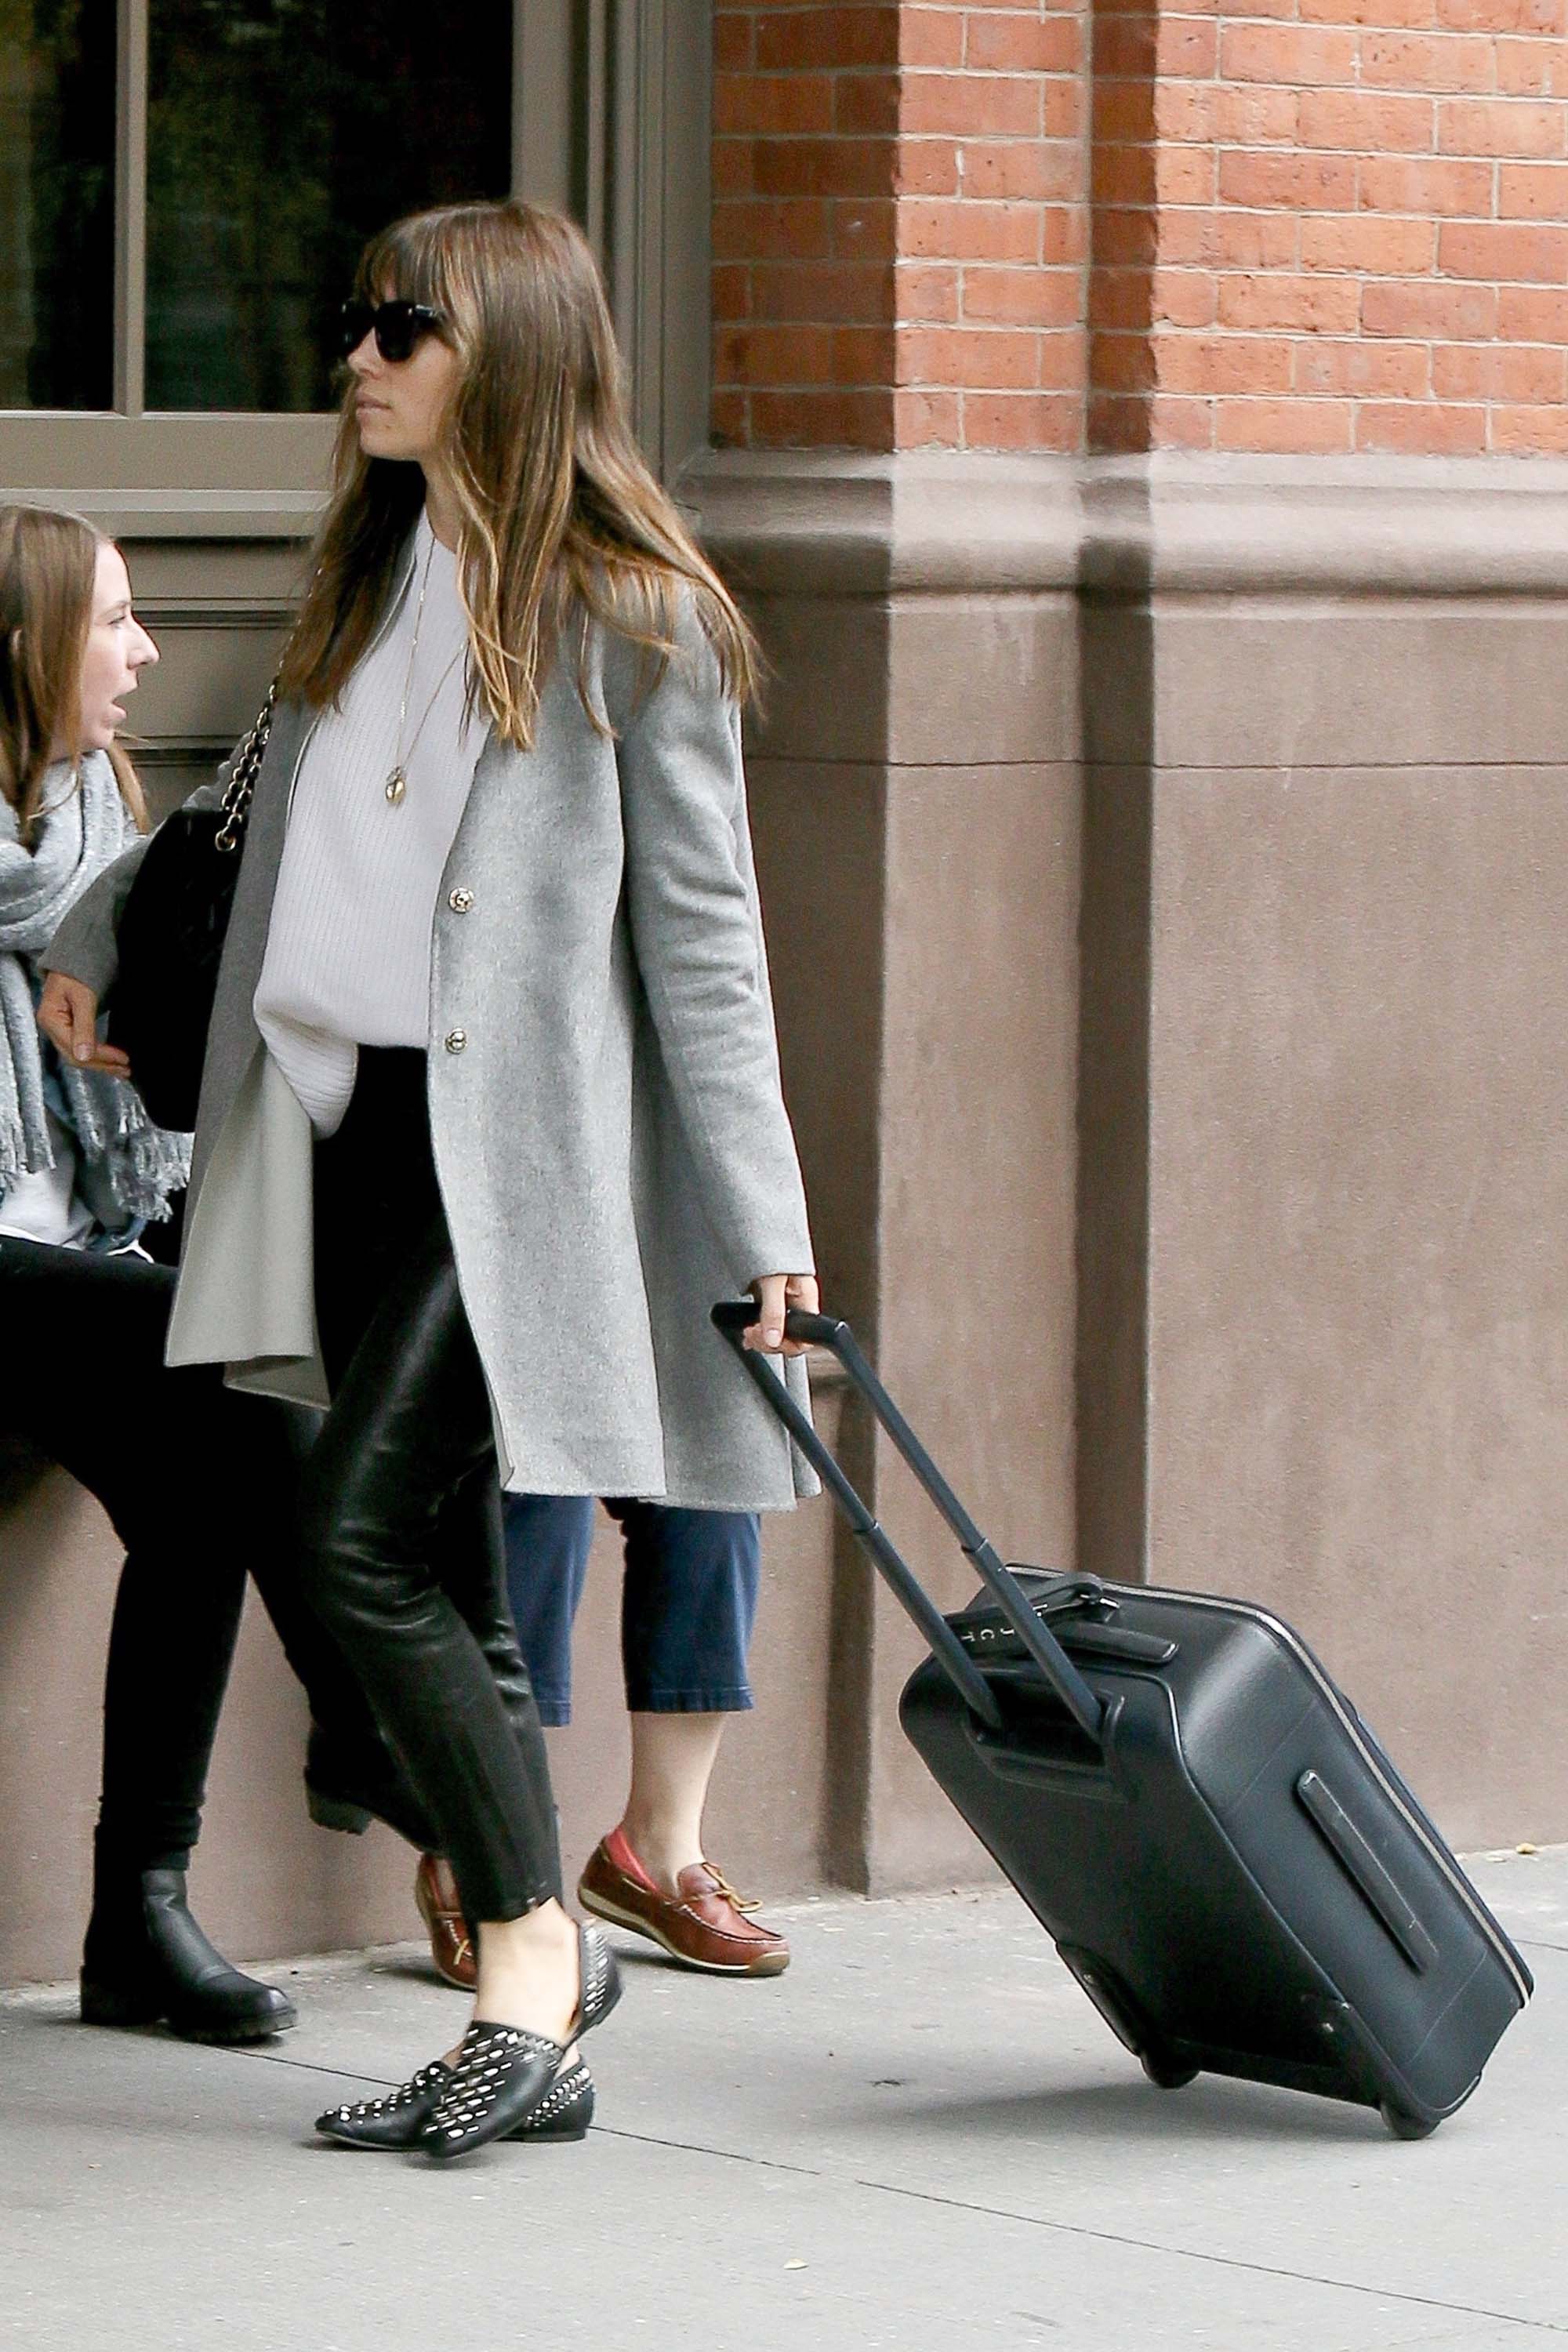 Jessica Biel arrives at JFK airport